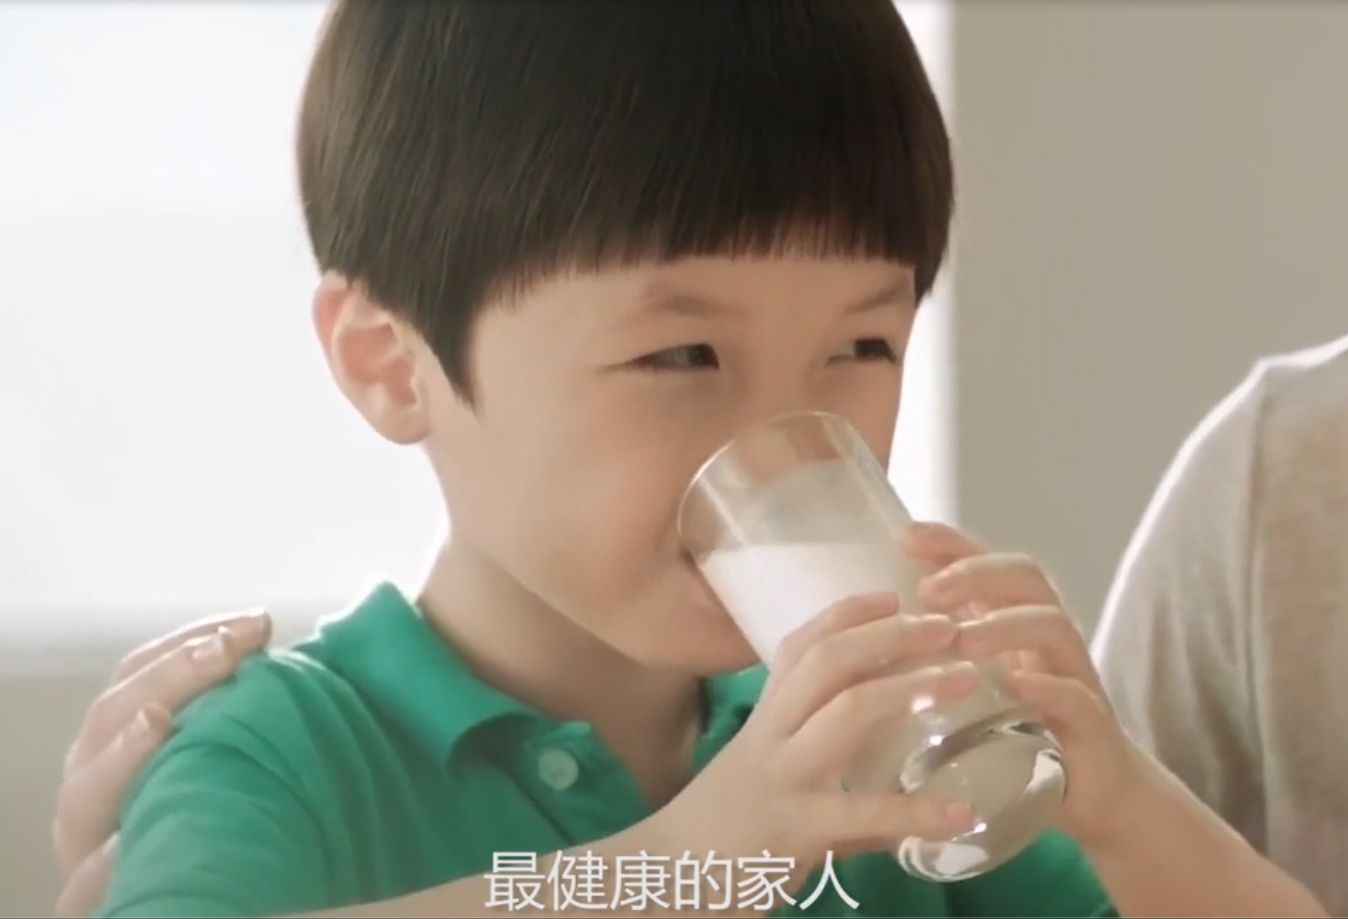 醇纯牛奶-产品广告片